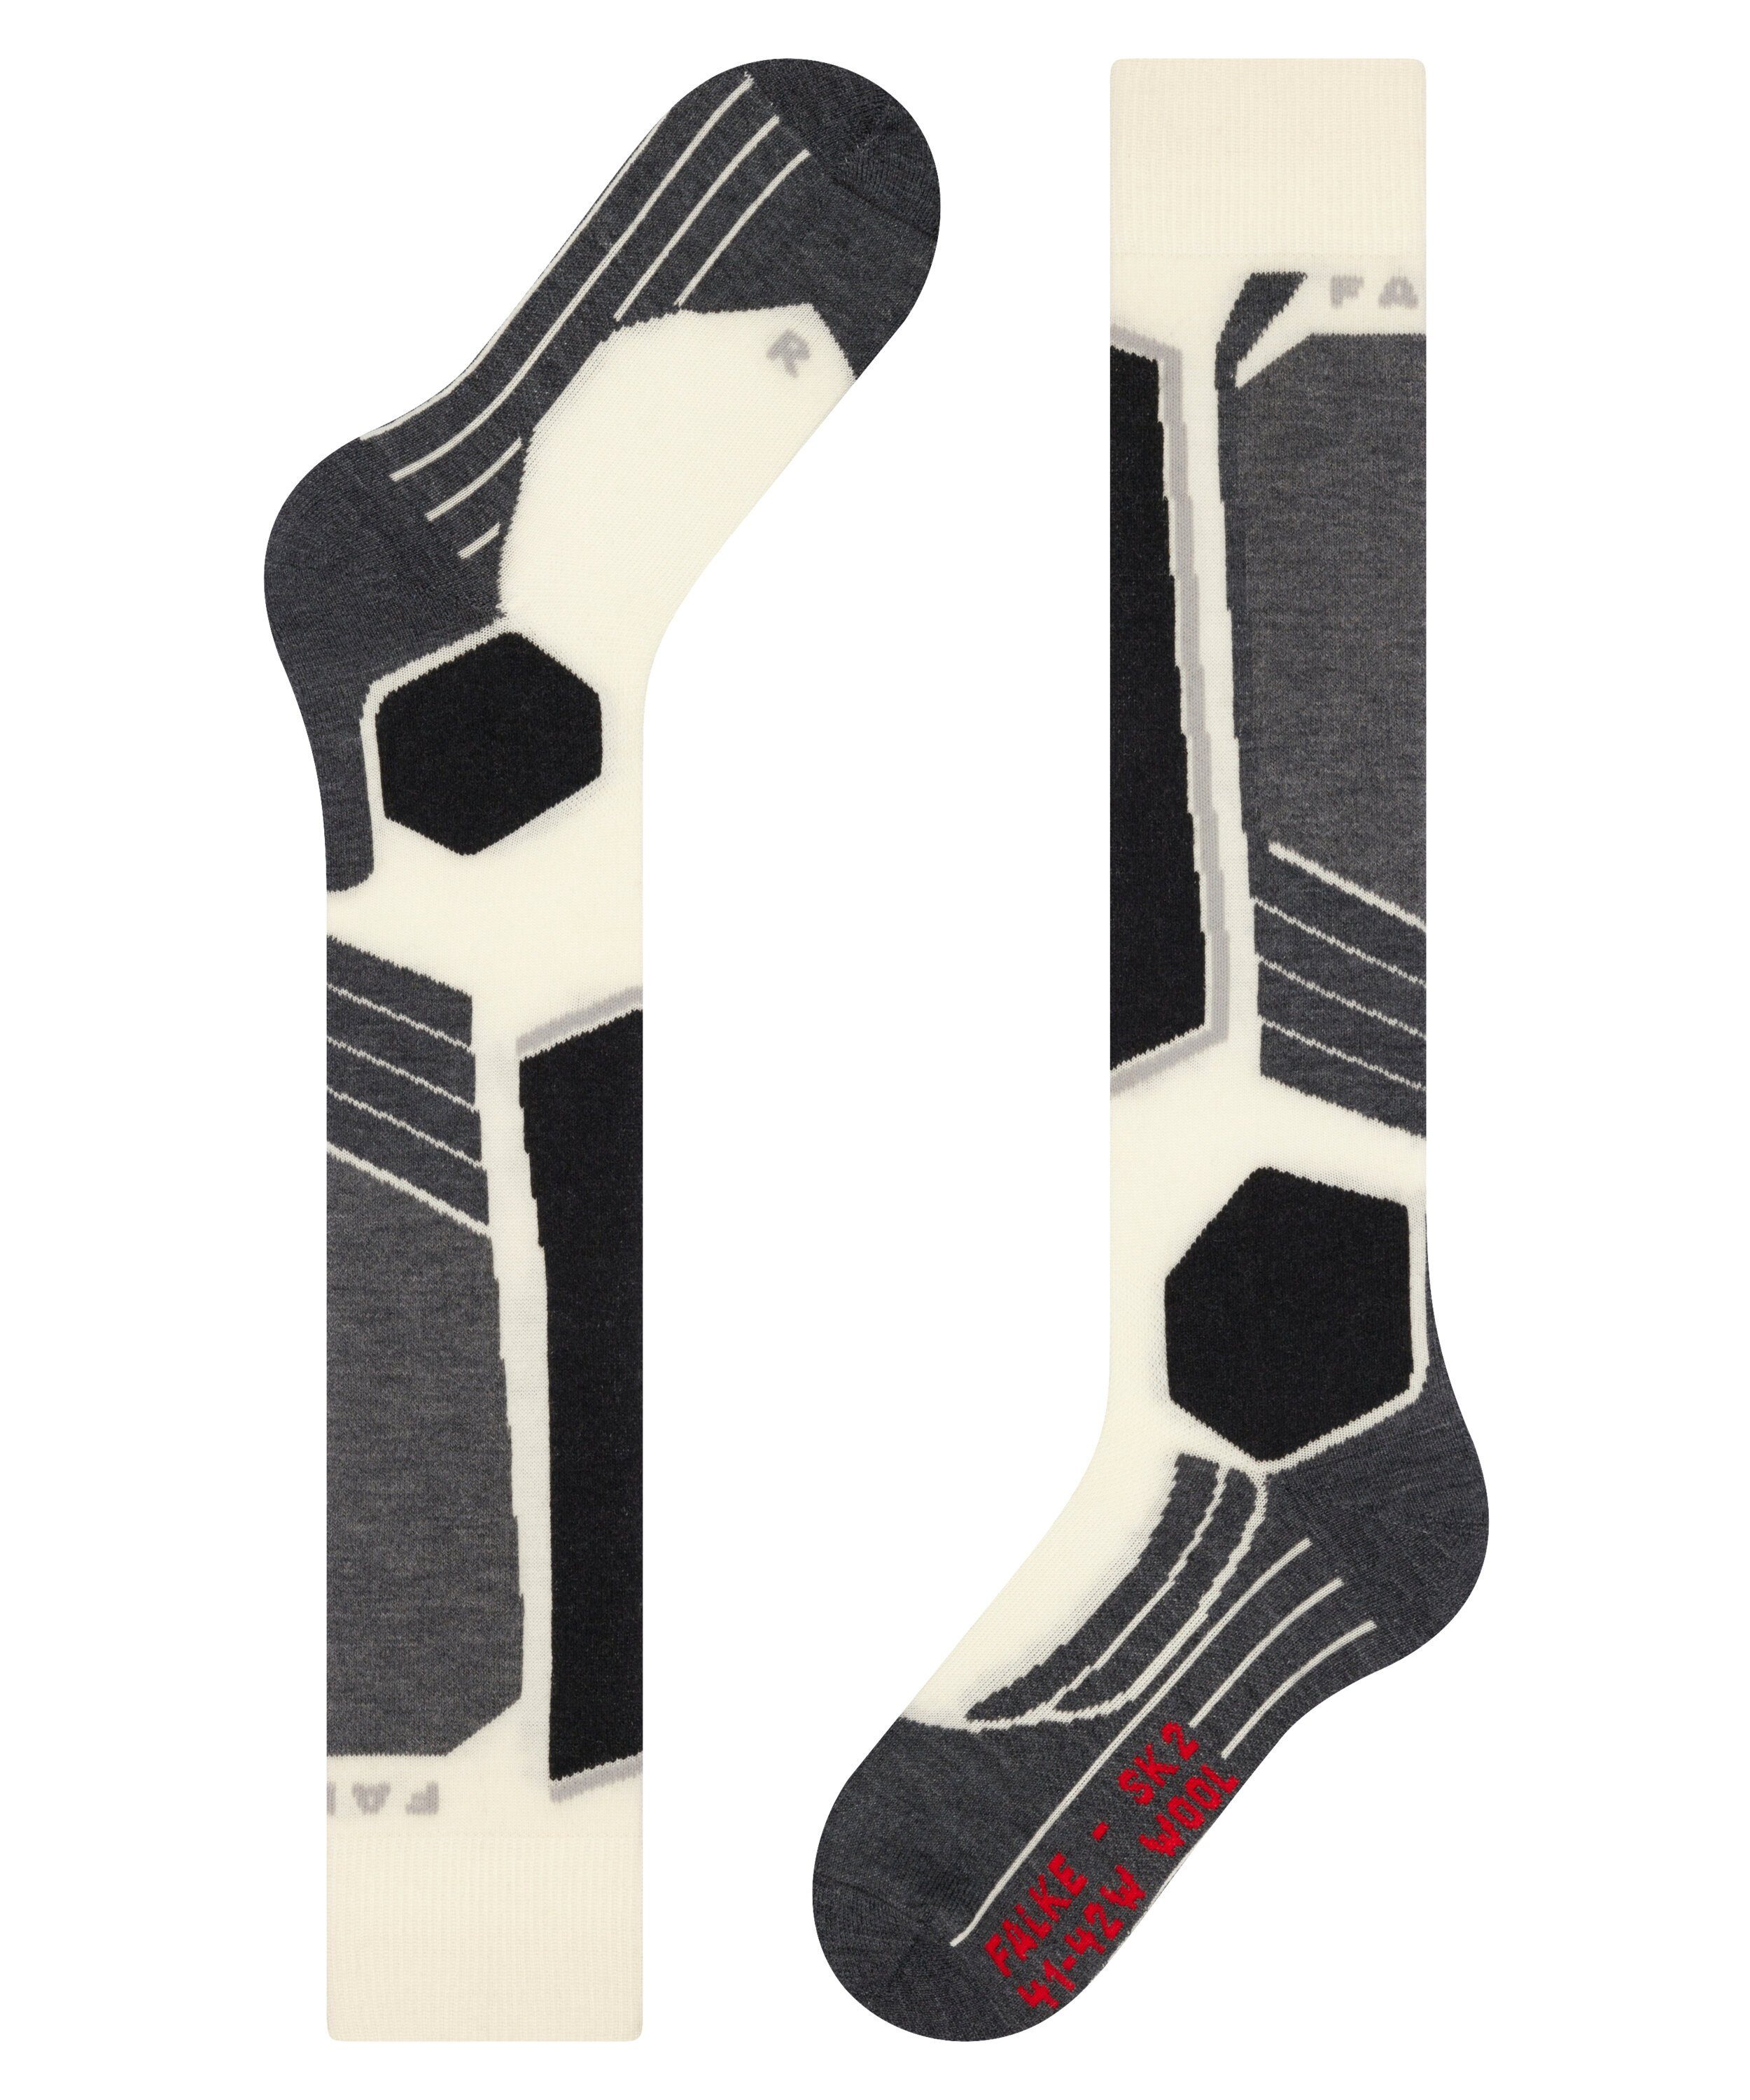 FALKE Skisocken Polsterung SK2 für mittelstarker Wool off-white (2040) mit Komfort (1-Paar) Kontrolle und Intermediate